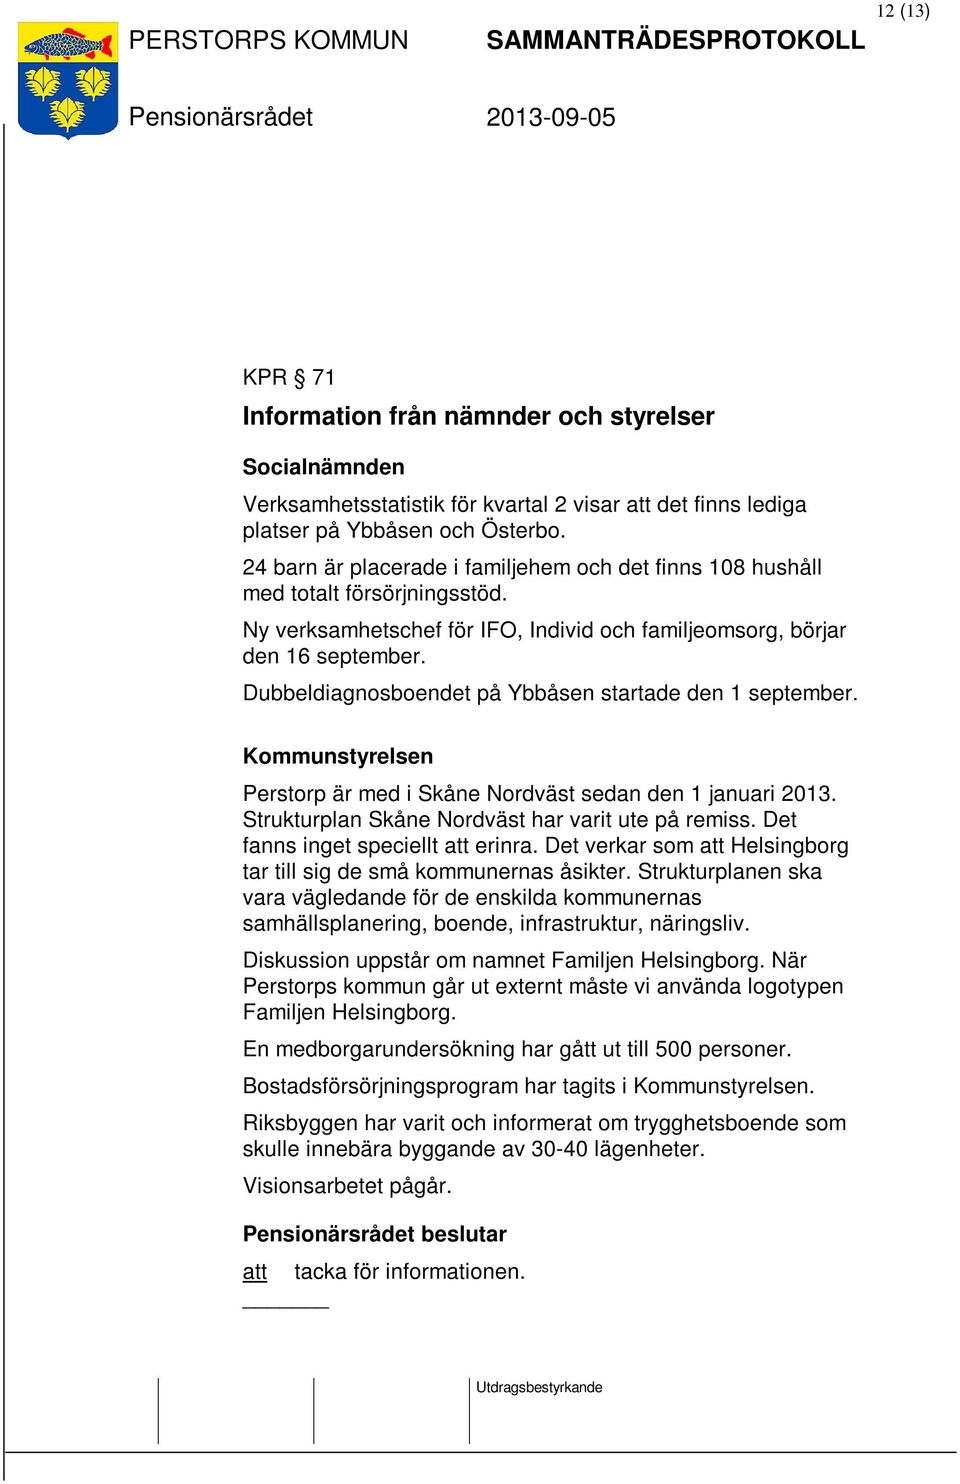 Dubbeldiagnosboendet på Ybbåsen startade den 1 september. Kommunstyrelsen Perstorp är med i Skåne Nordväst sedan den 1 januari 2013. Strukturplan Skåne Nordväst har varit ute på remiss.